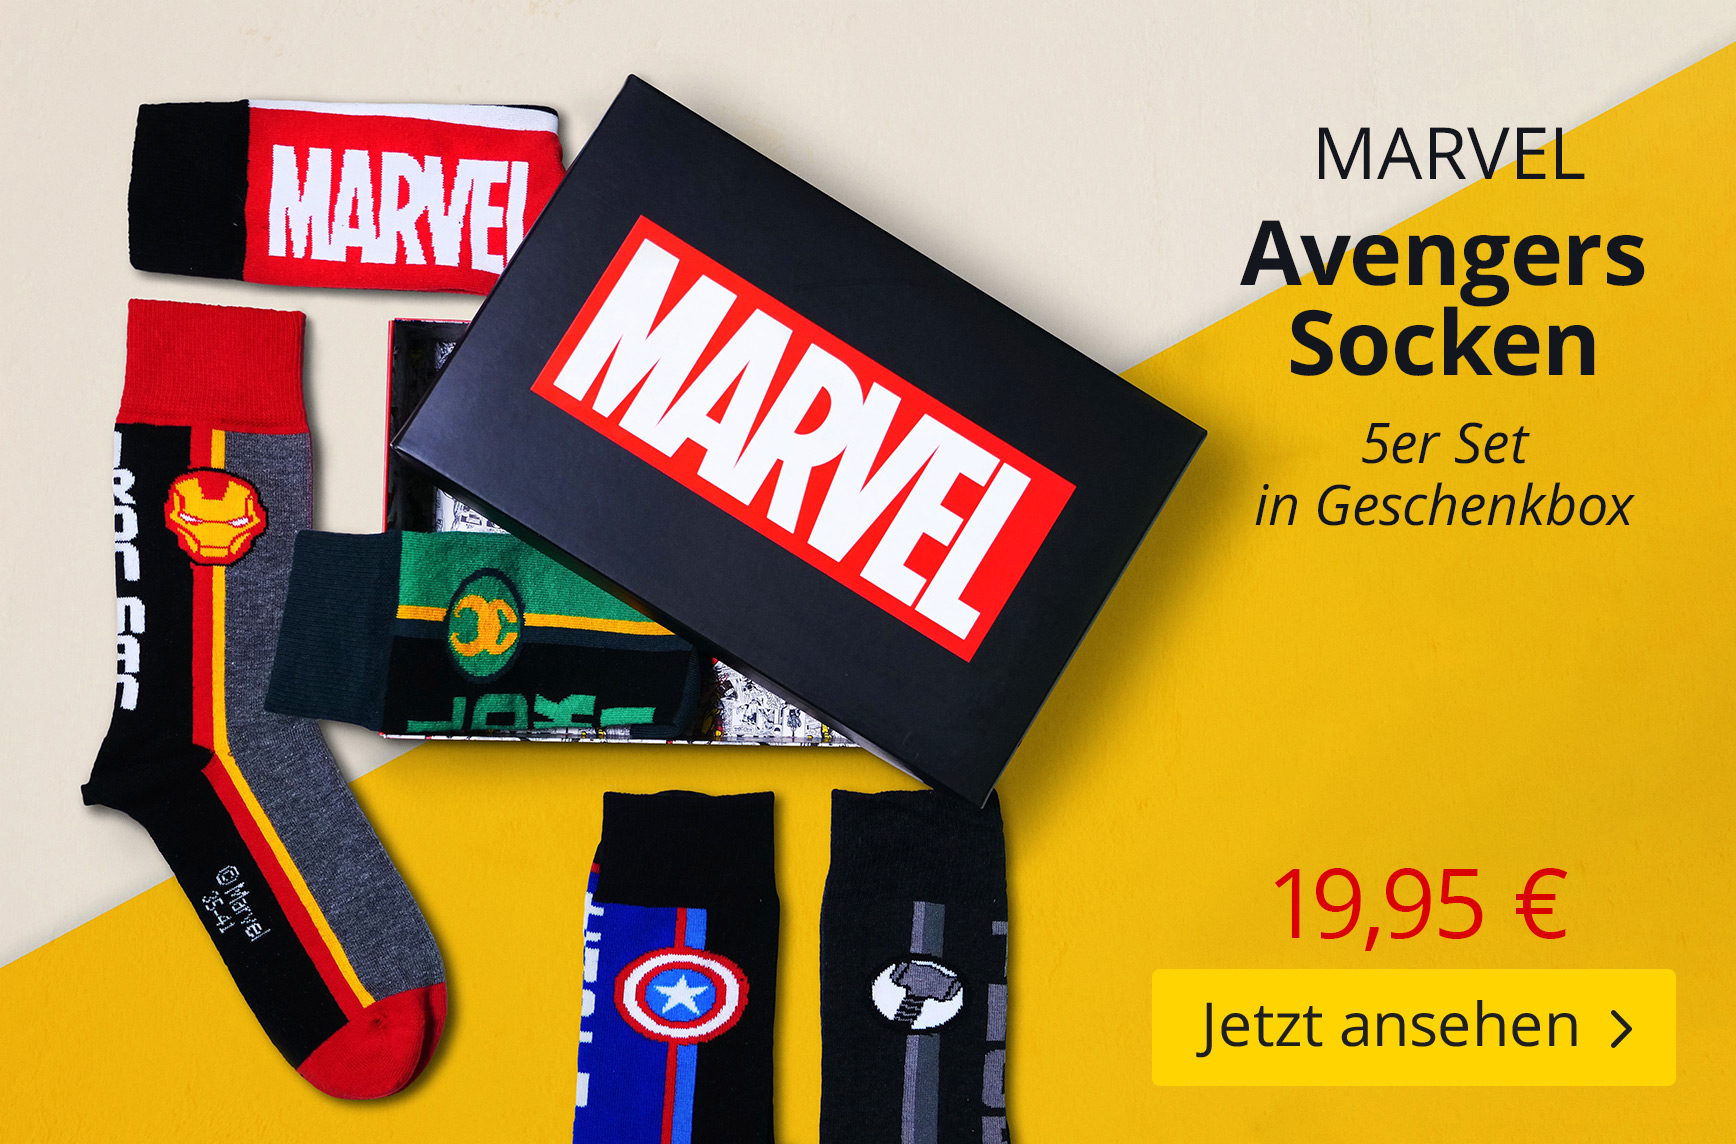 Marvel Avengers Socken 5er Set - 19,95 EUR